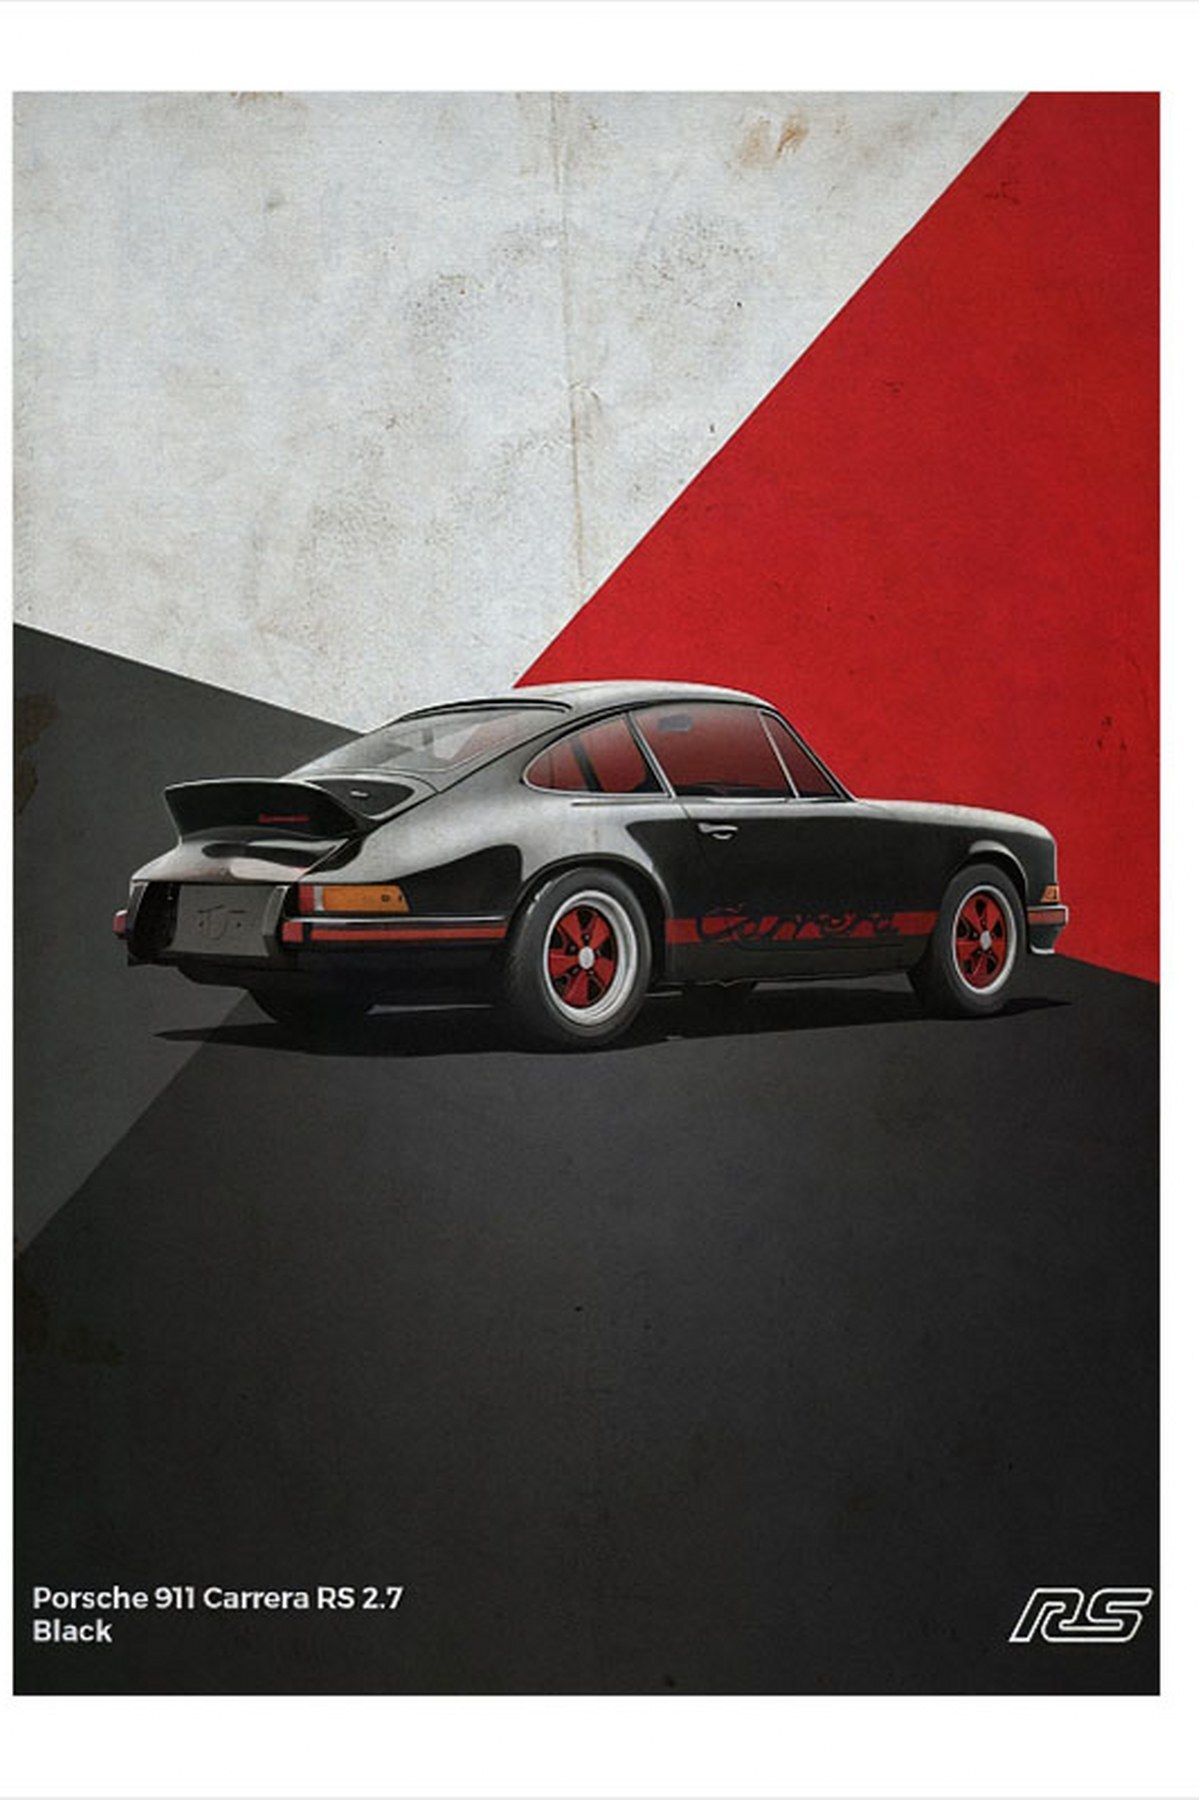 karizmart Porsche 911 Carrera Siyah Araba Tasarım Mdf Tablo 50cmX 70cm